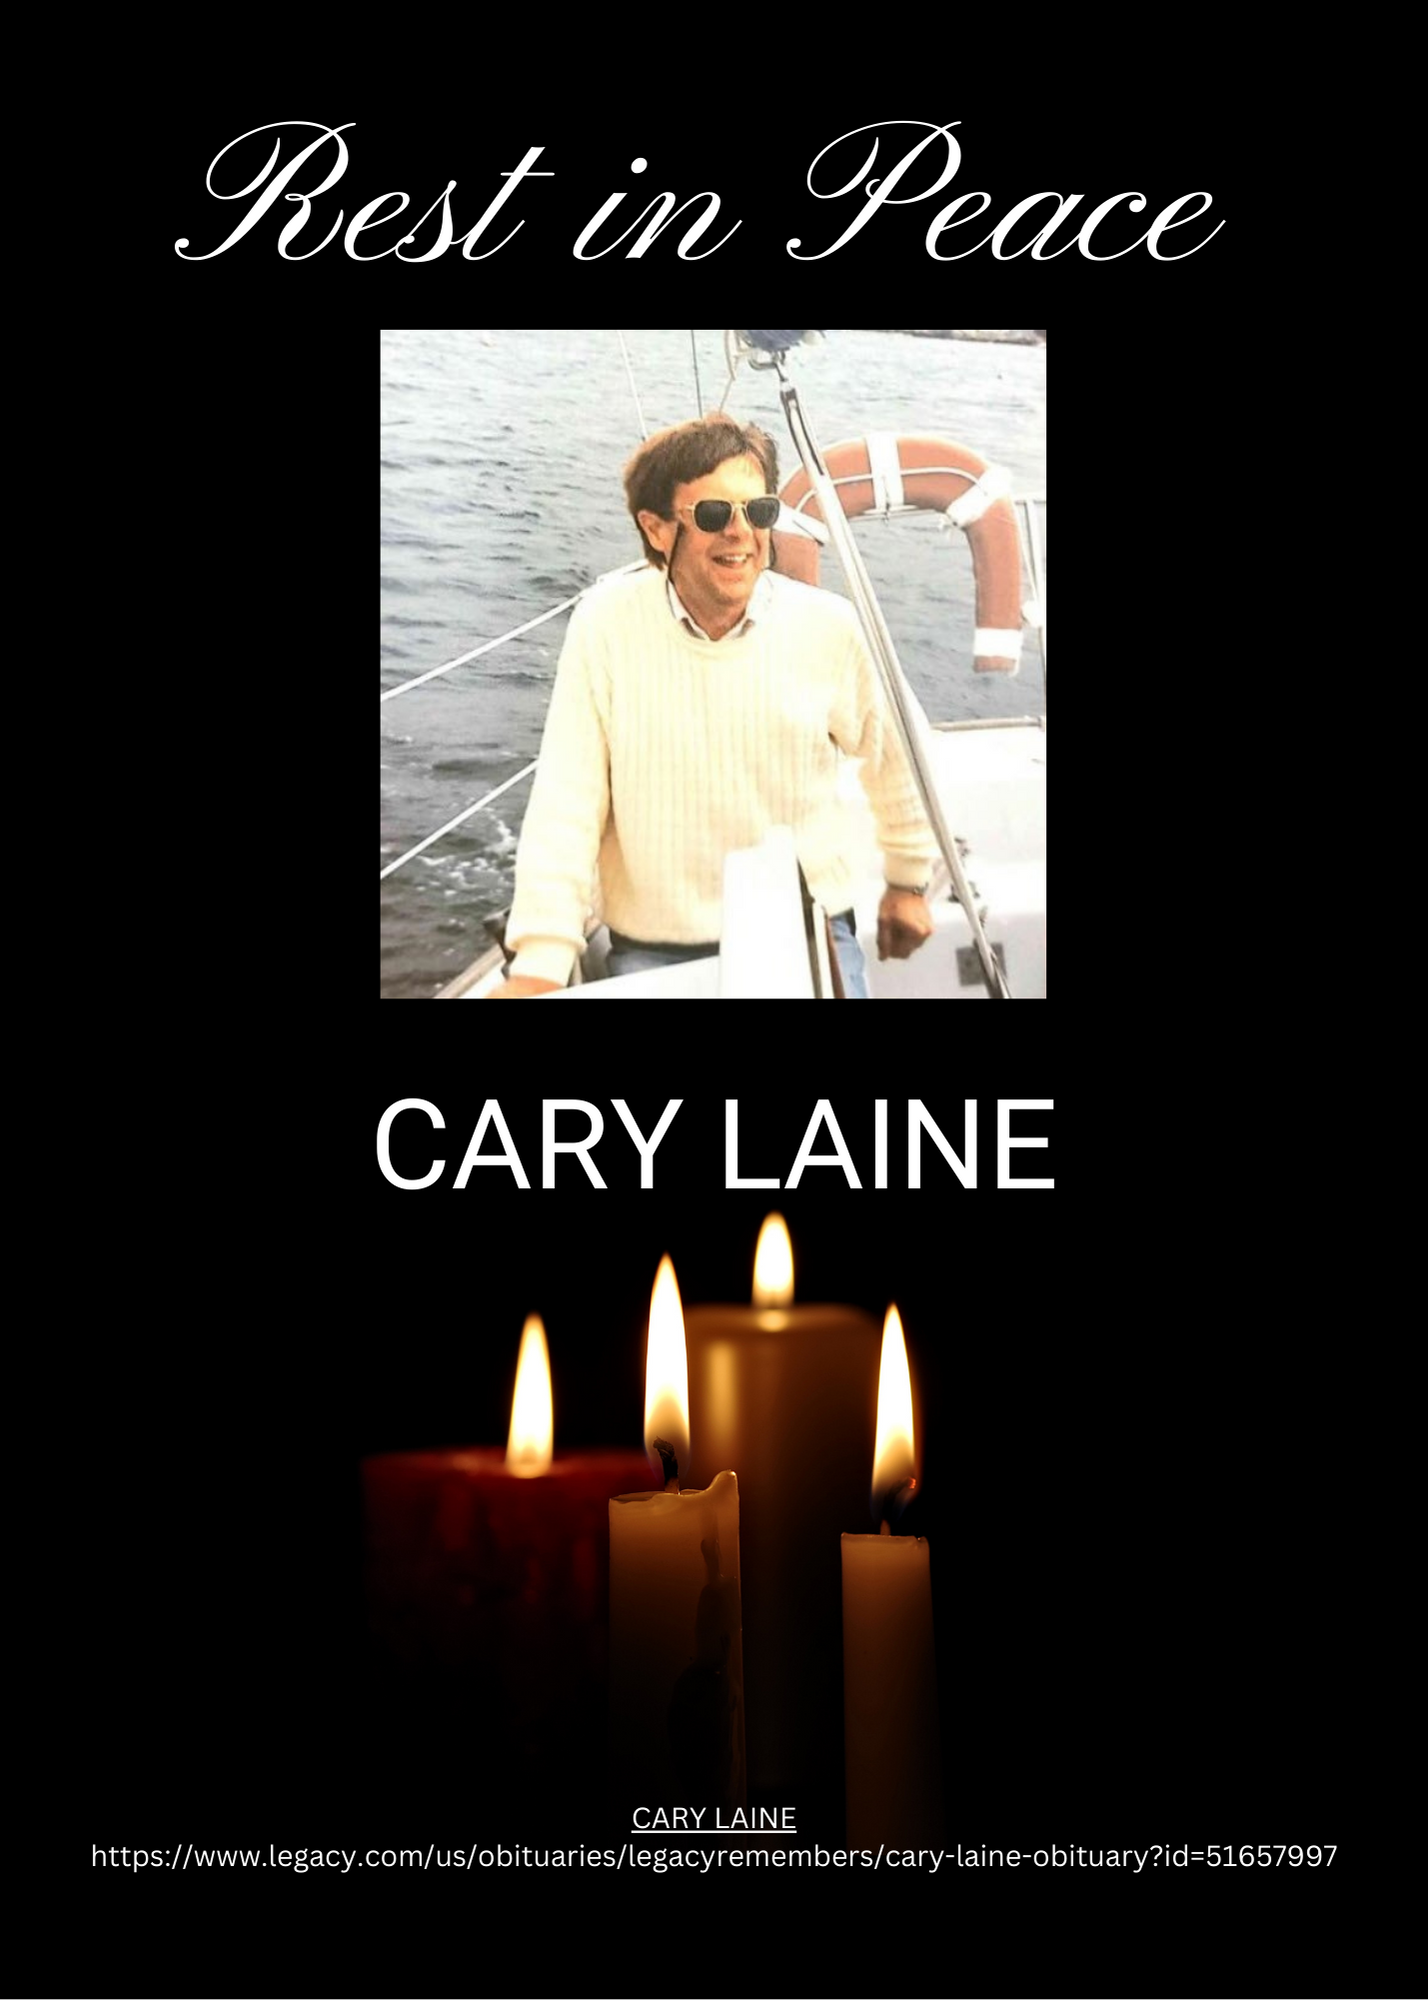 Cary Laine